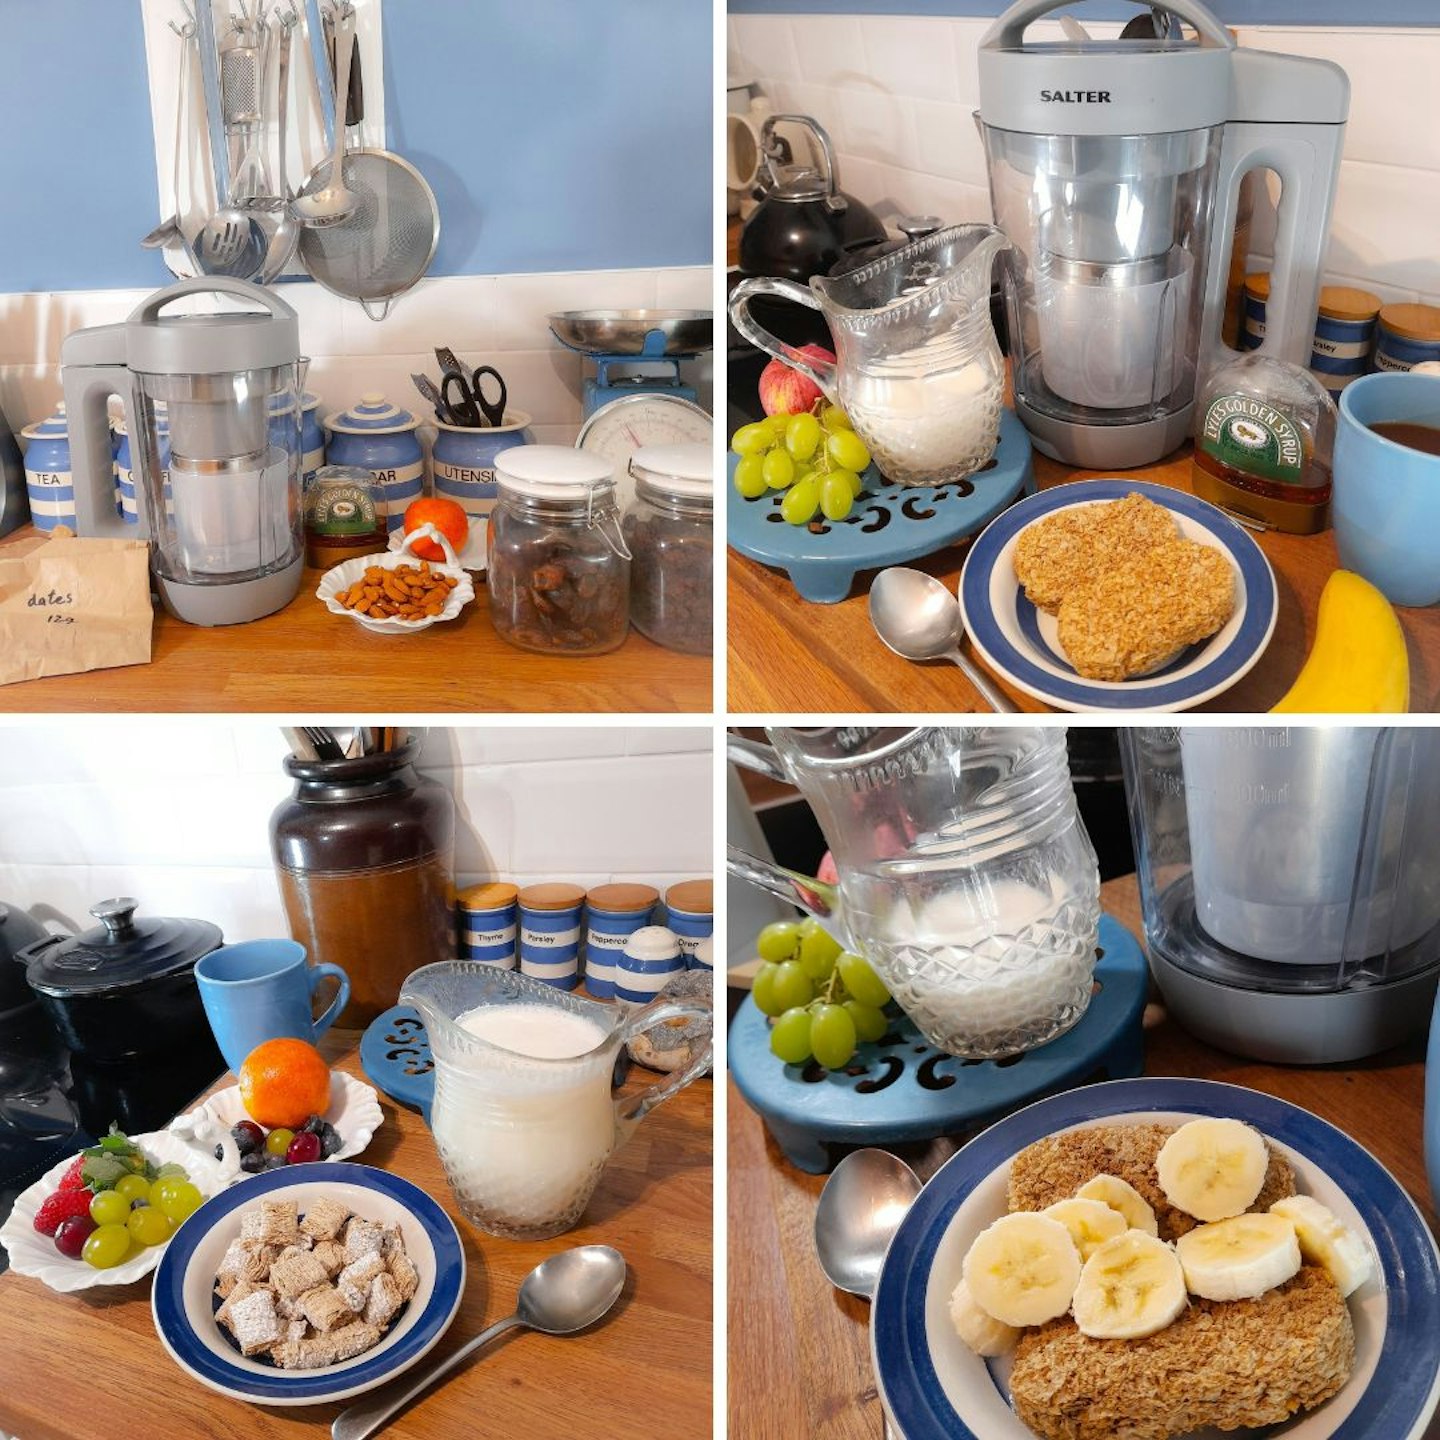 Enjoying homemade plant milk on breakfast cereal, using Salter's Plant M!lk Maker.